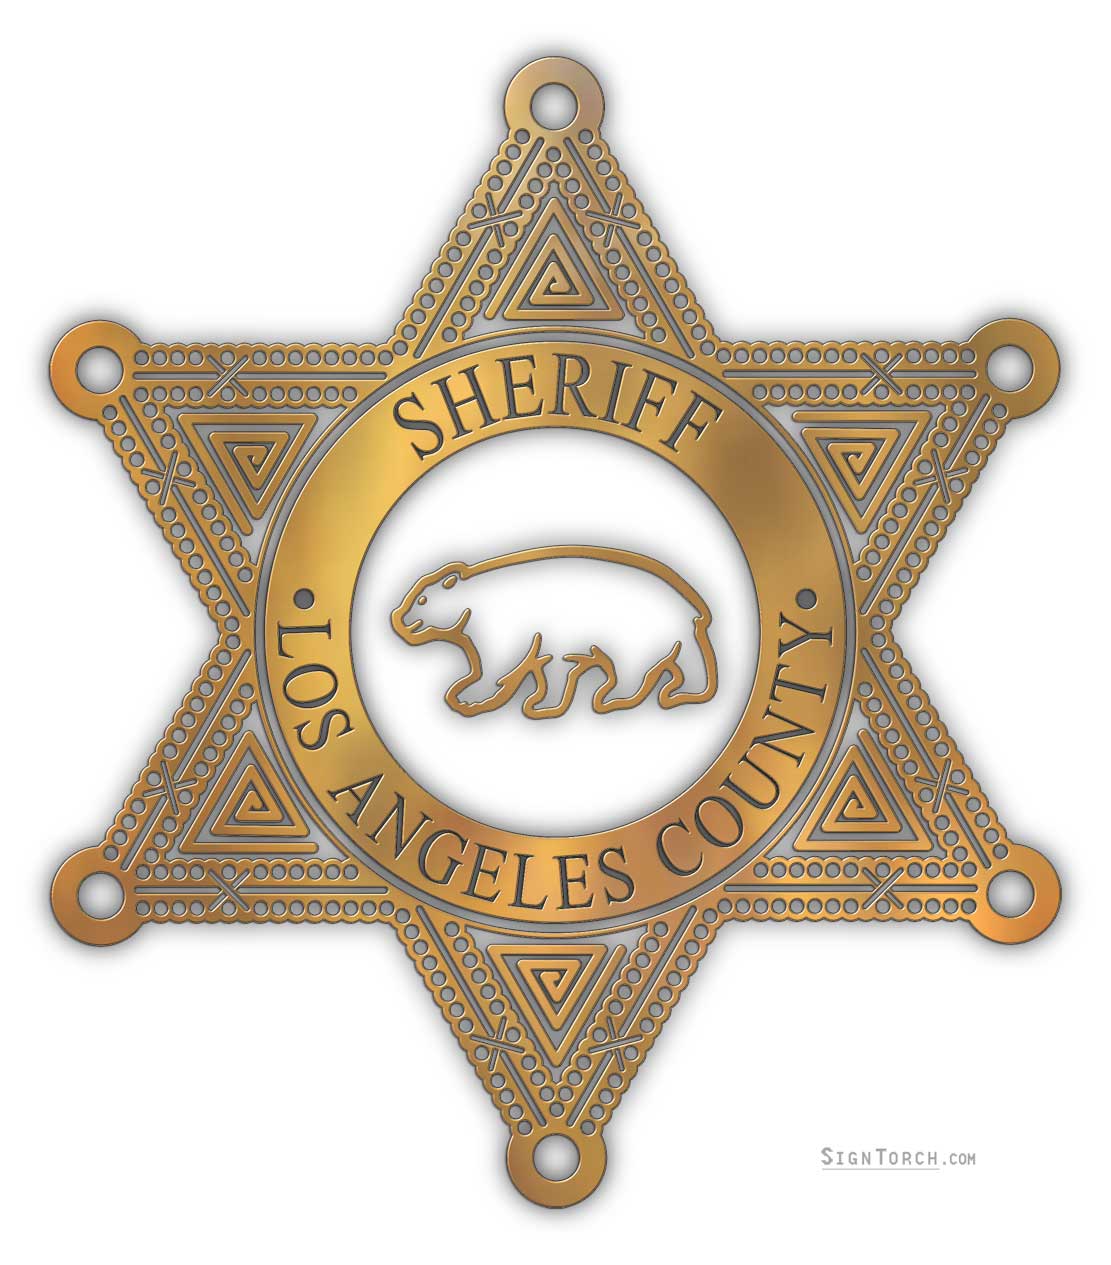 la_county_sheriff_badge2.